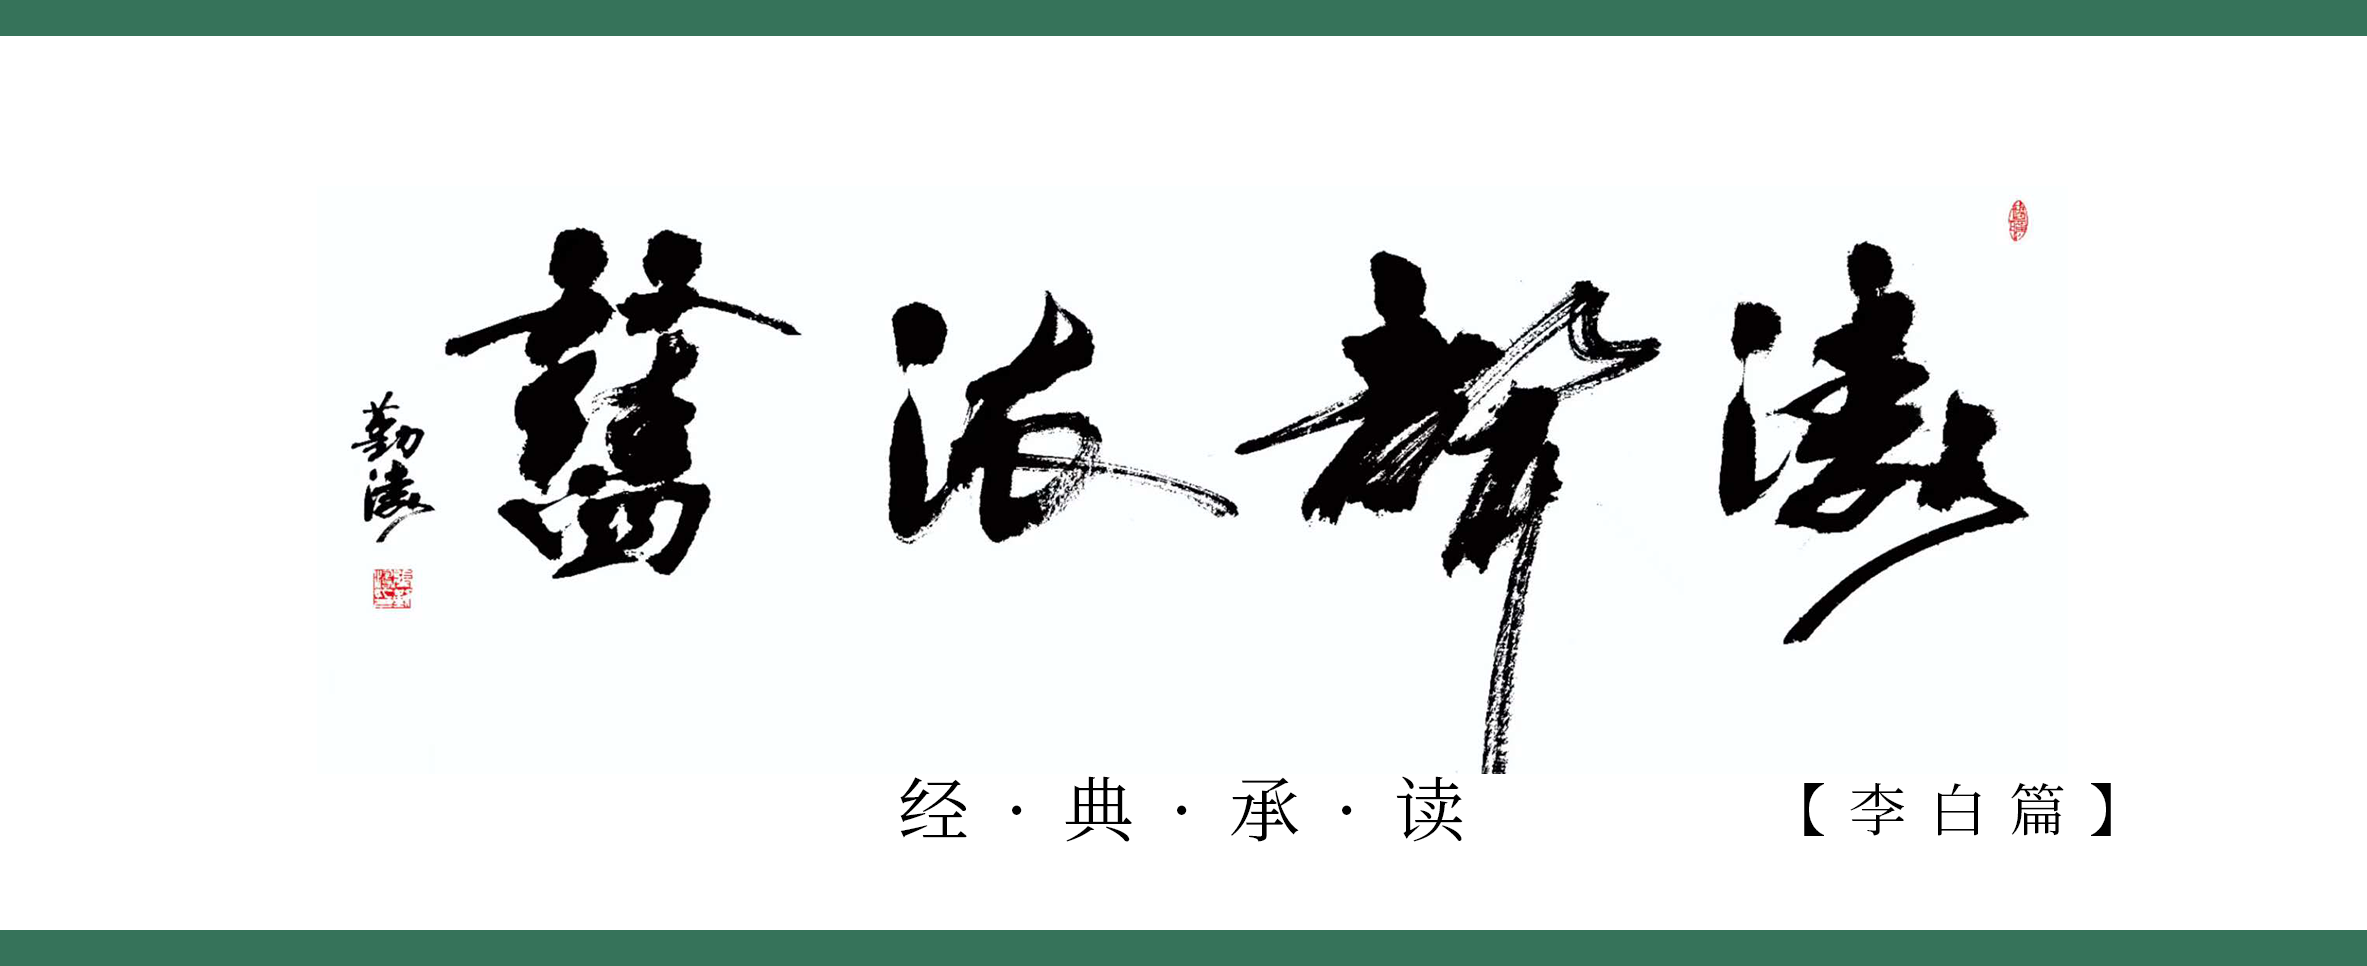 《涛声依旧 · 经典承读》——上皇西巡南京歌（其三）(图1)